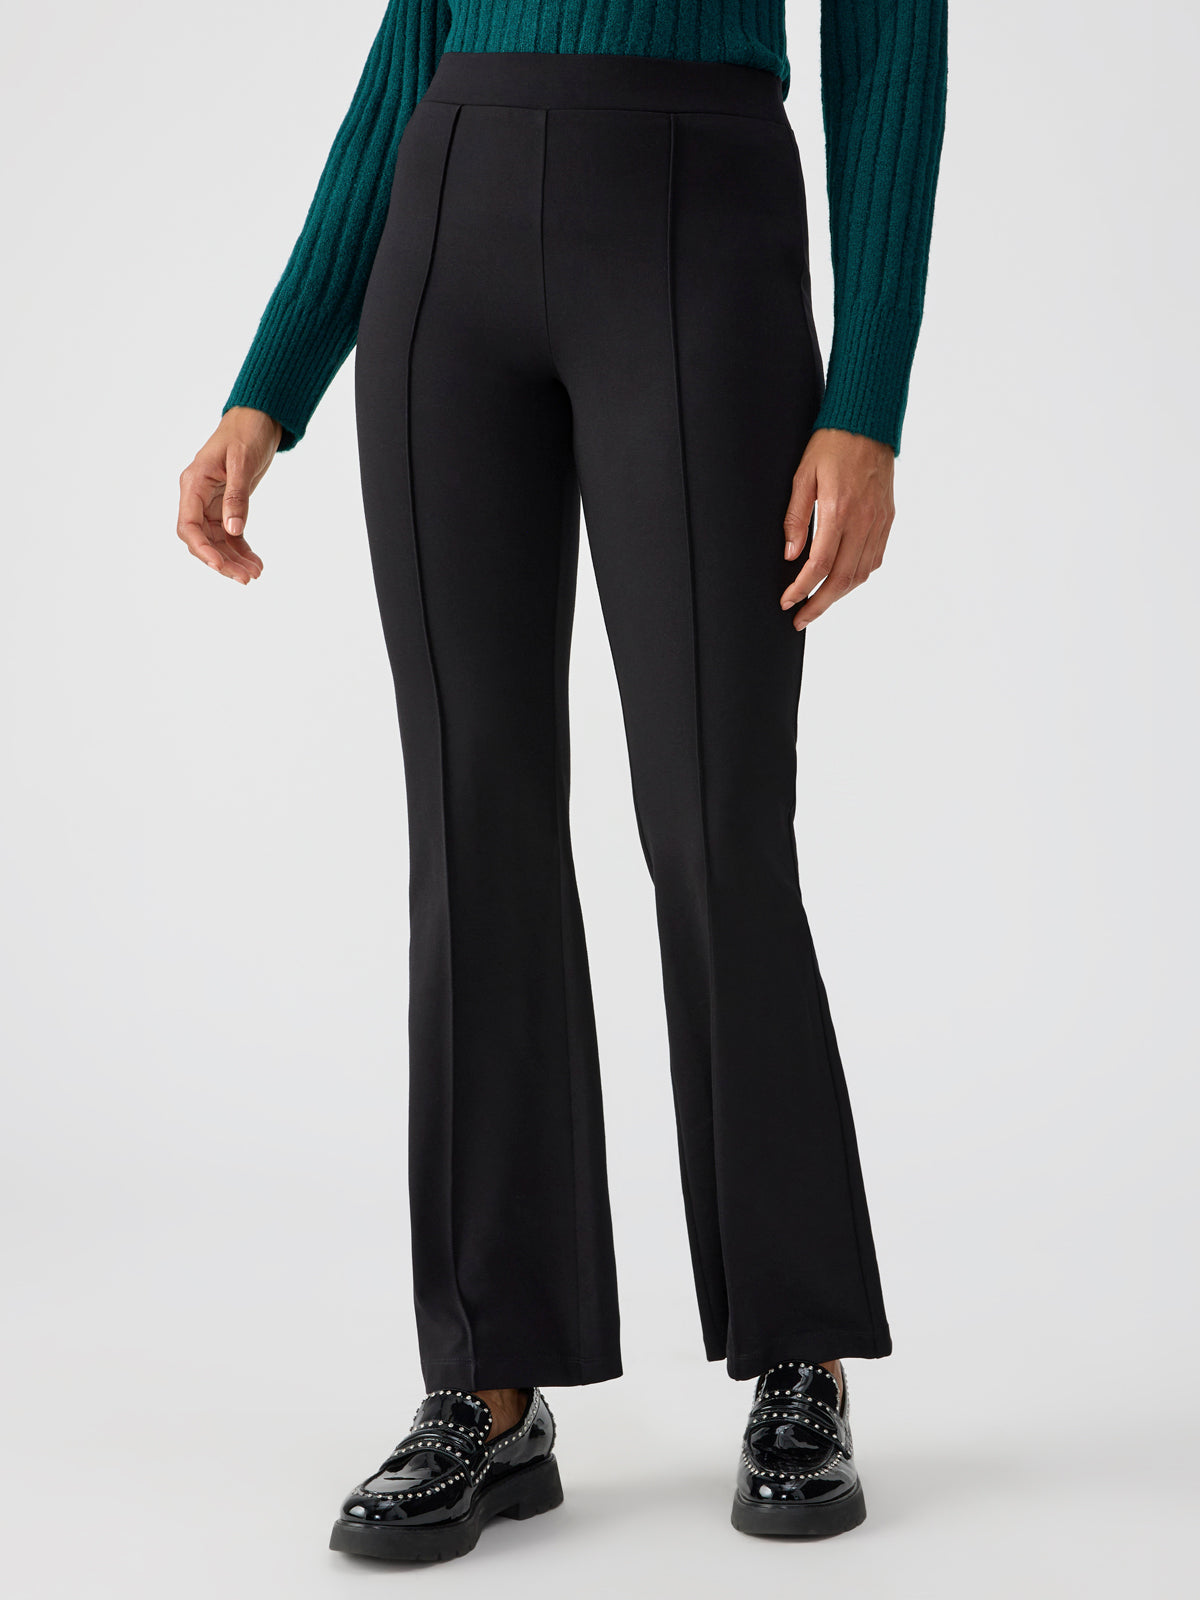 Lana Semi High Rise Flare Pant Black – Sanctuary Clothing